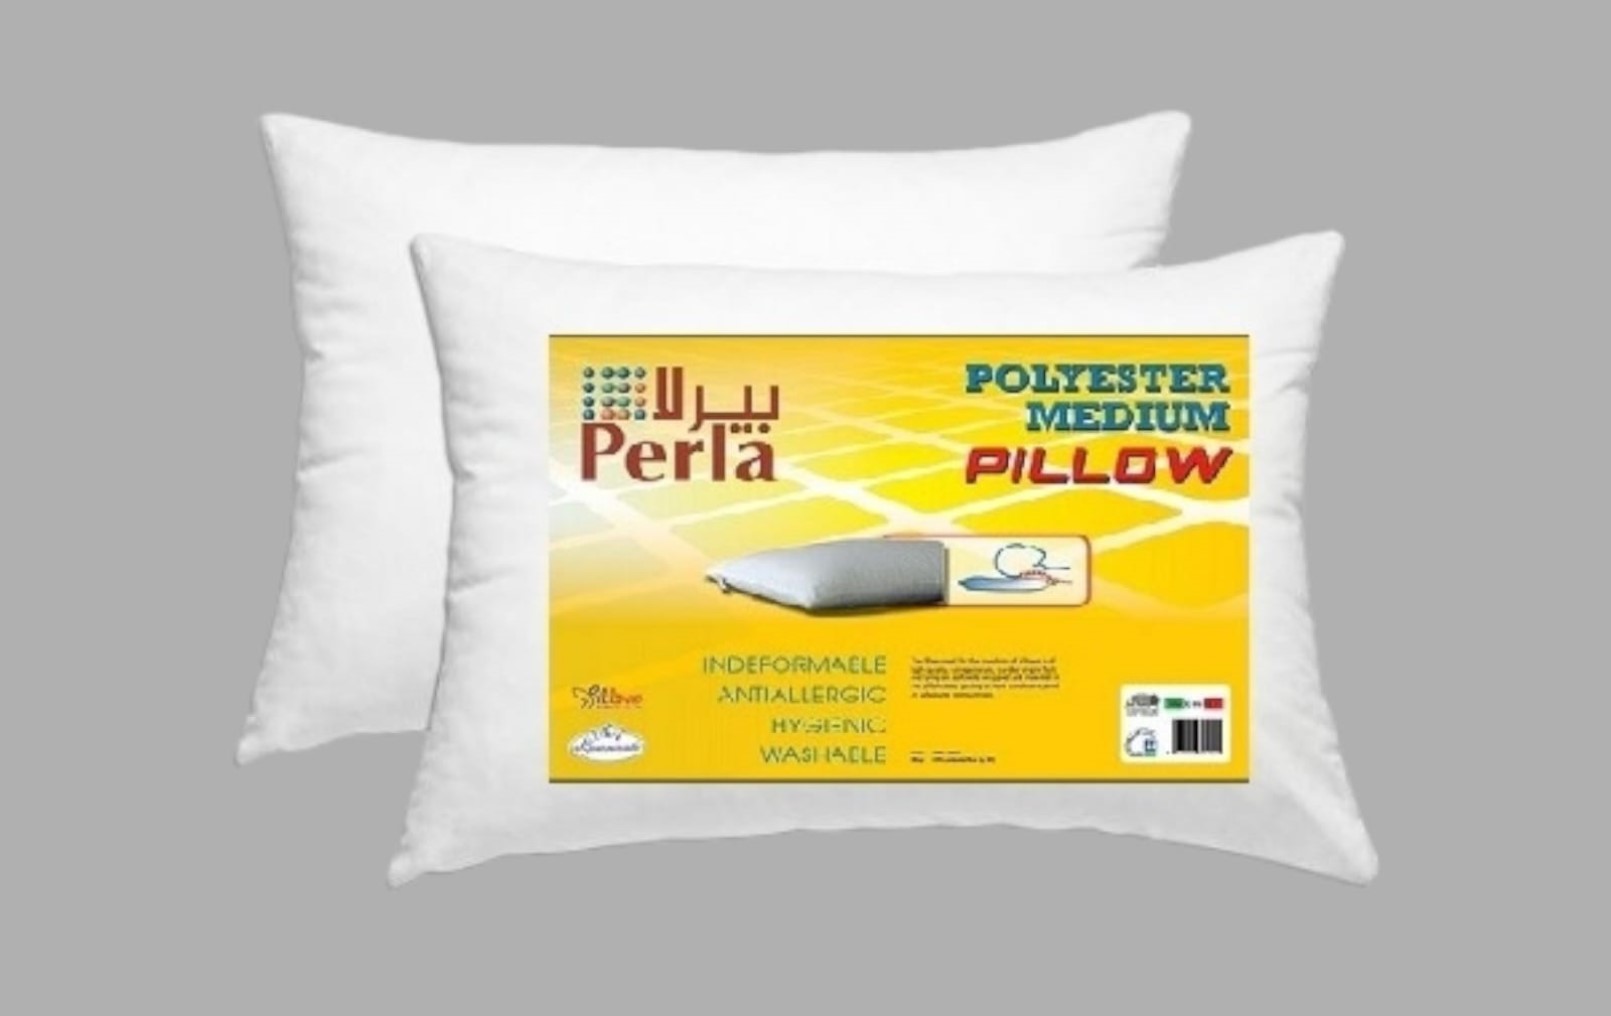 Perla Italian Pillow Medium